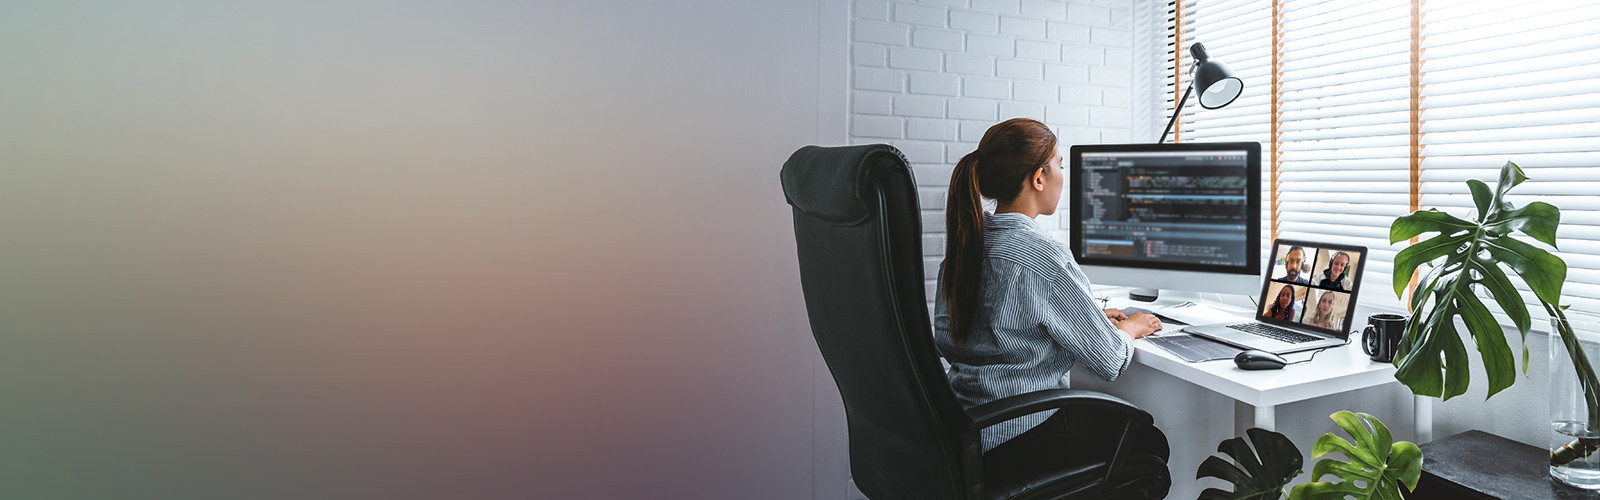 femme assise à un bureau regardant un écran d'ordinateur